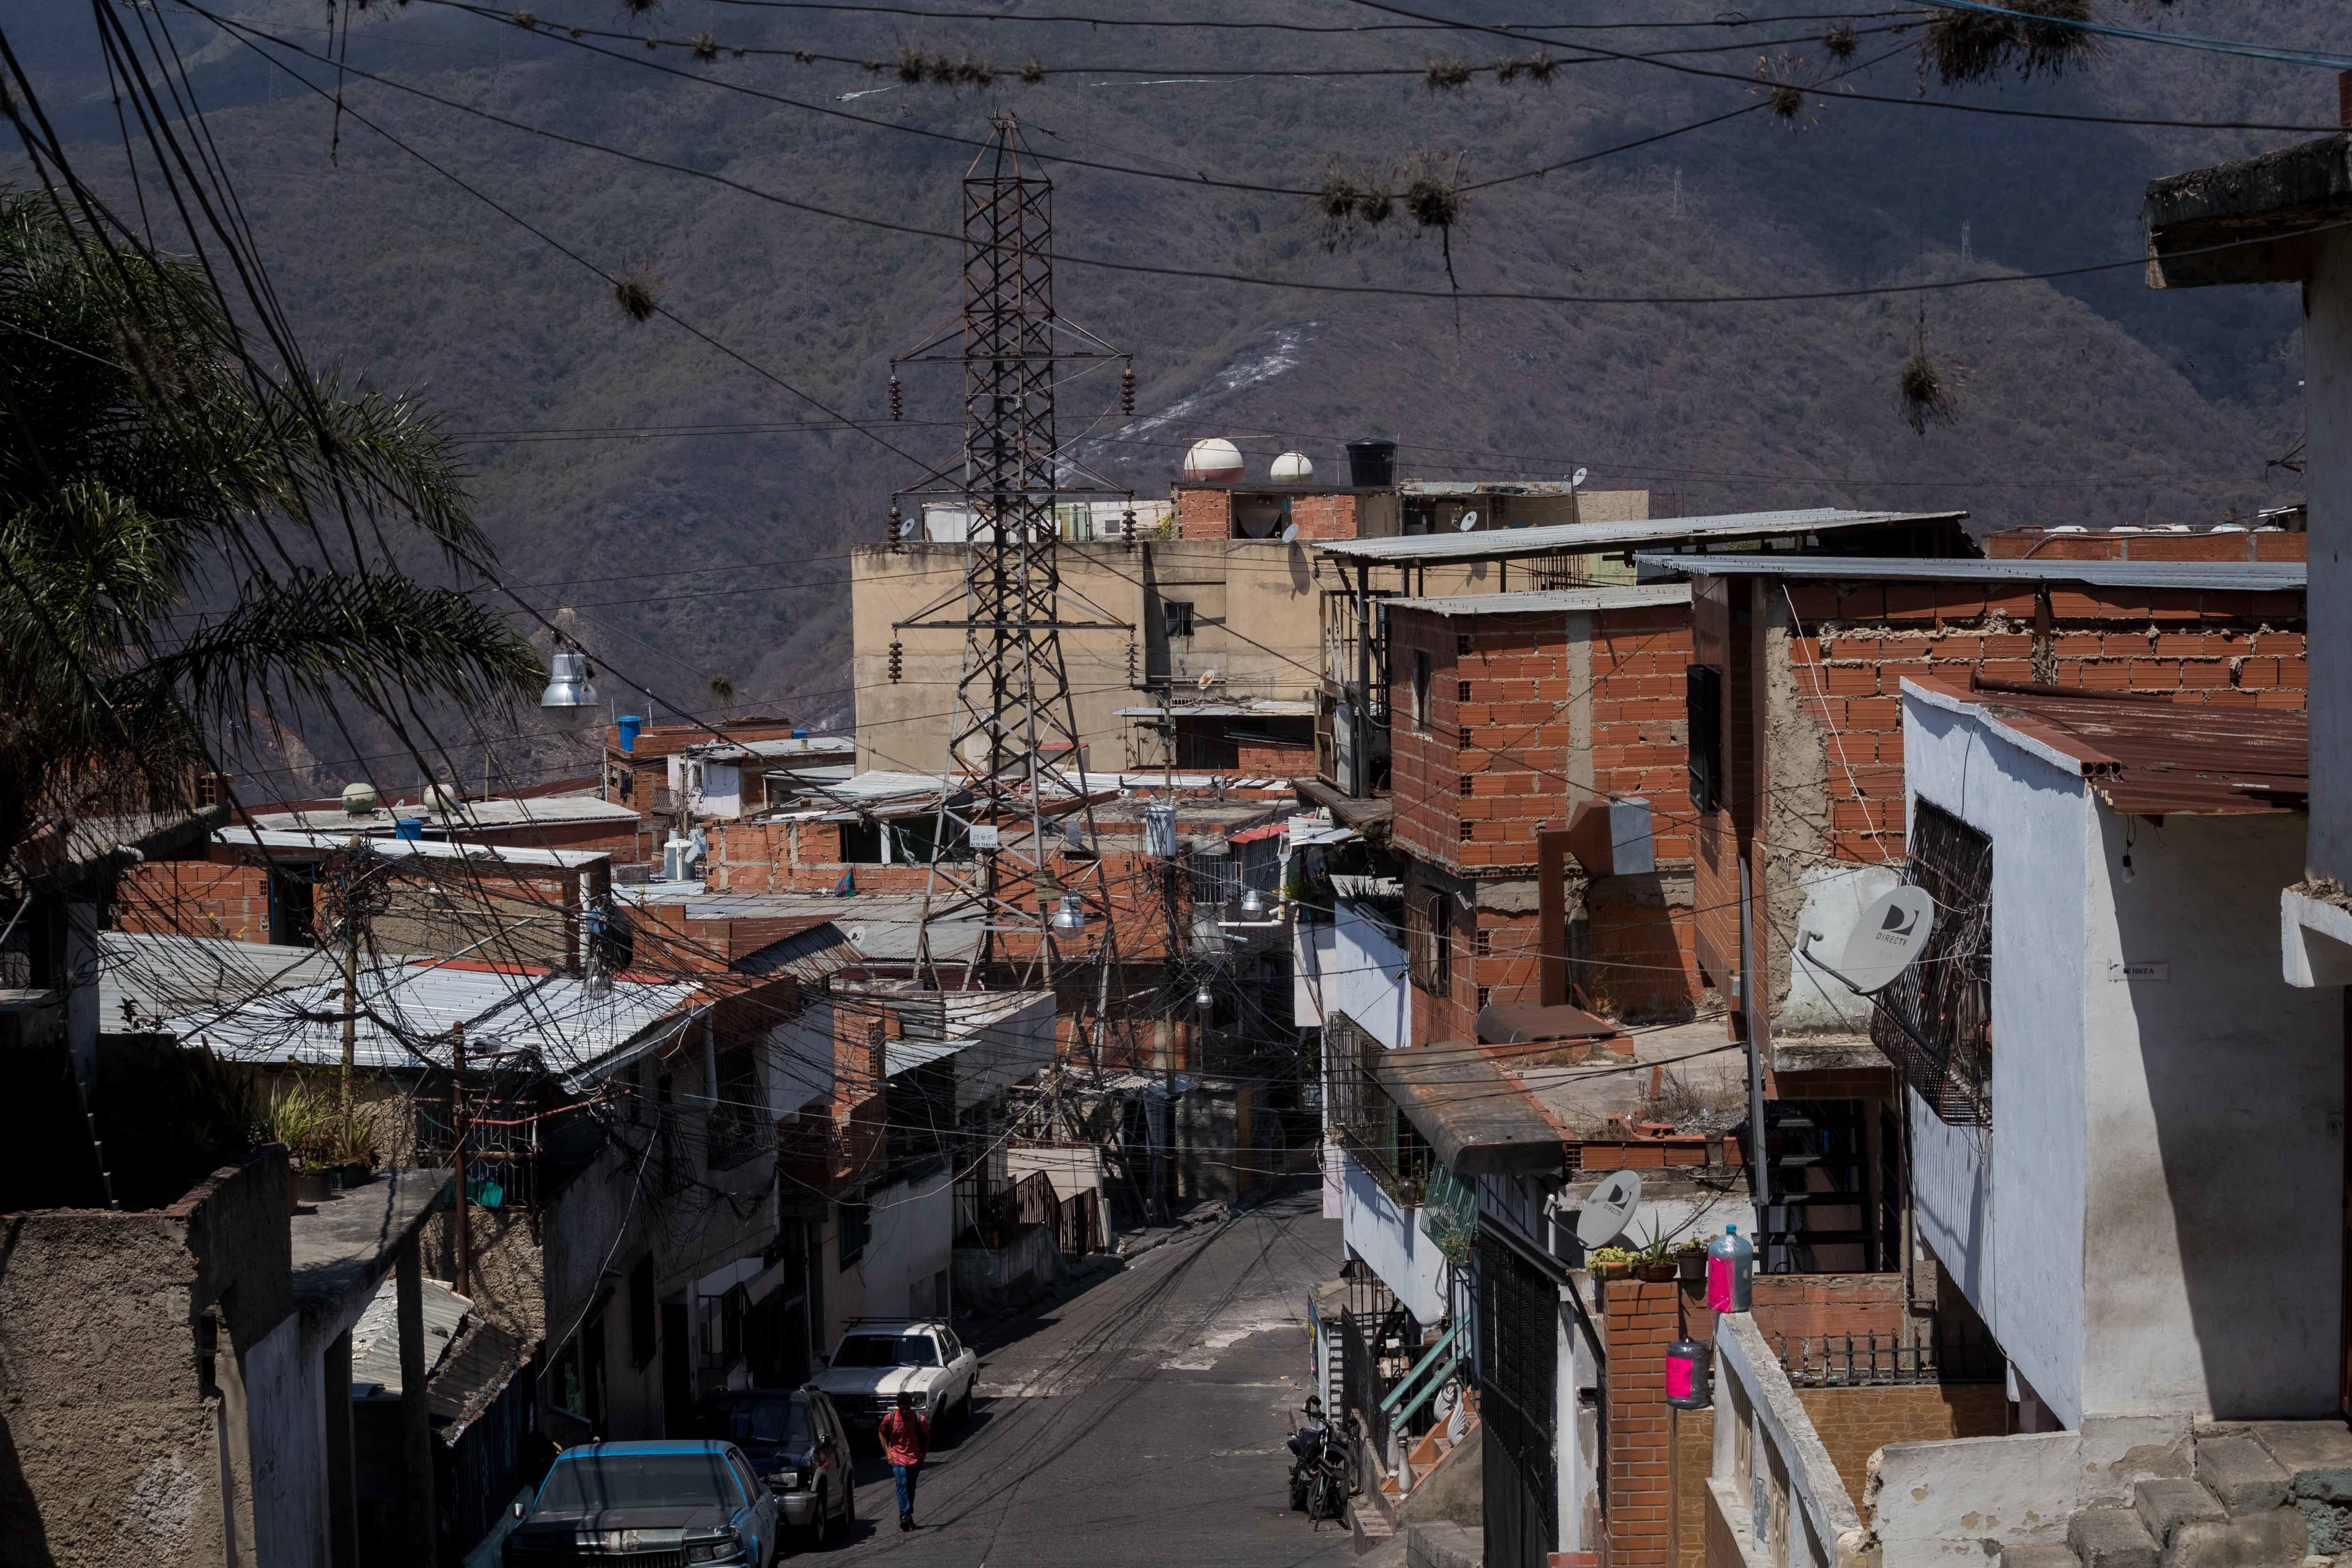 La pobreza que se vive en Venezuela a orillado a muchas familias a abandonar a sus hijos recién nacidos porque no pueden mantenerlos. (Foto Prensa Libre: EFE)